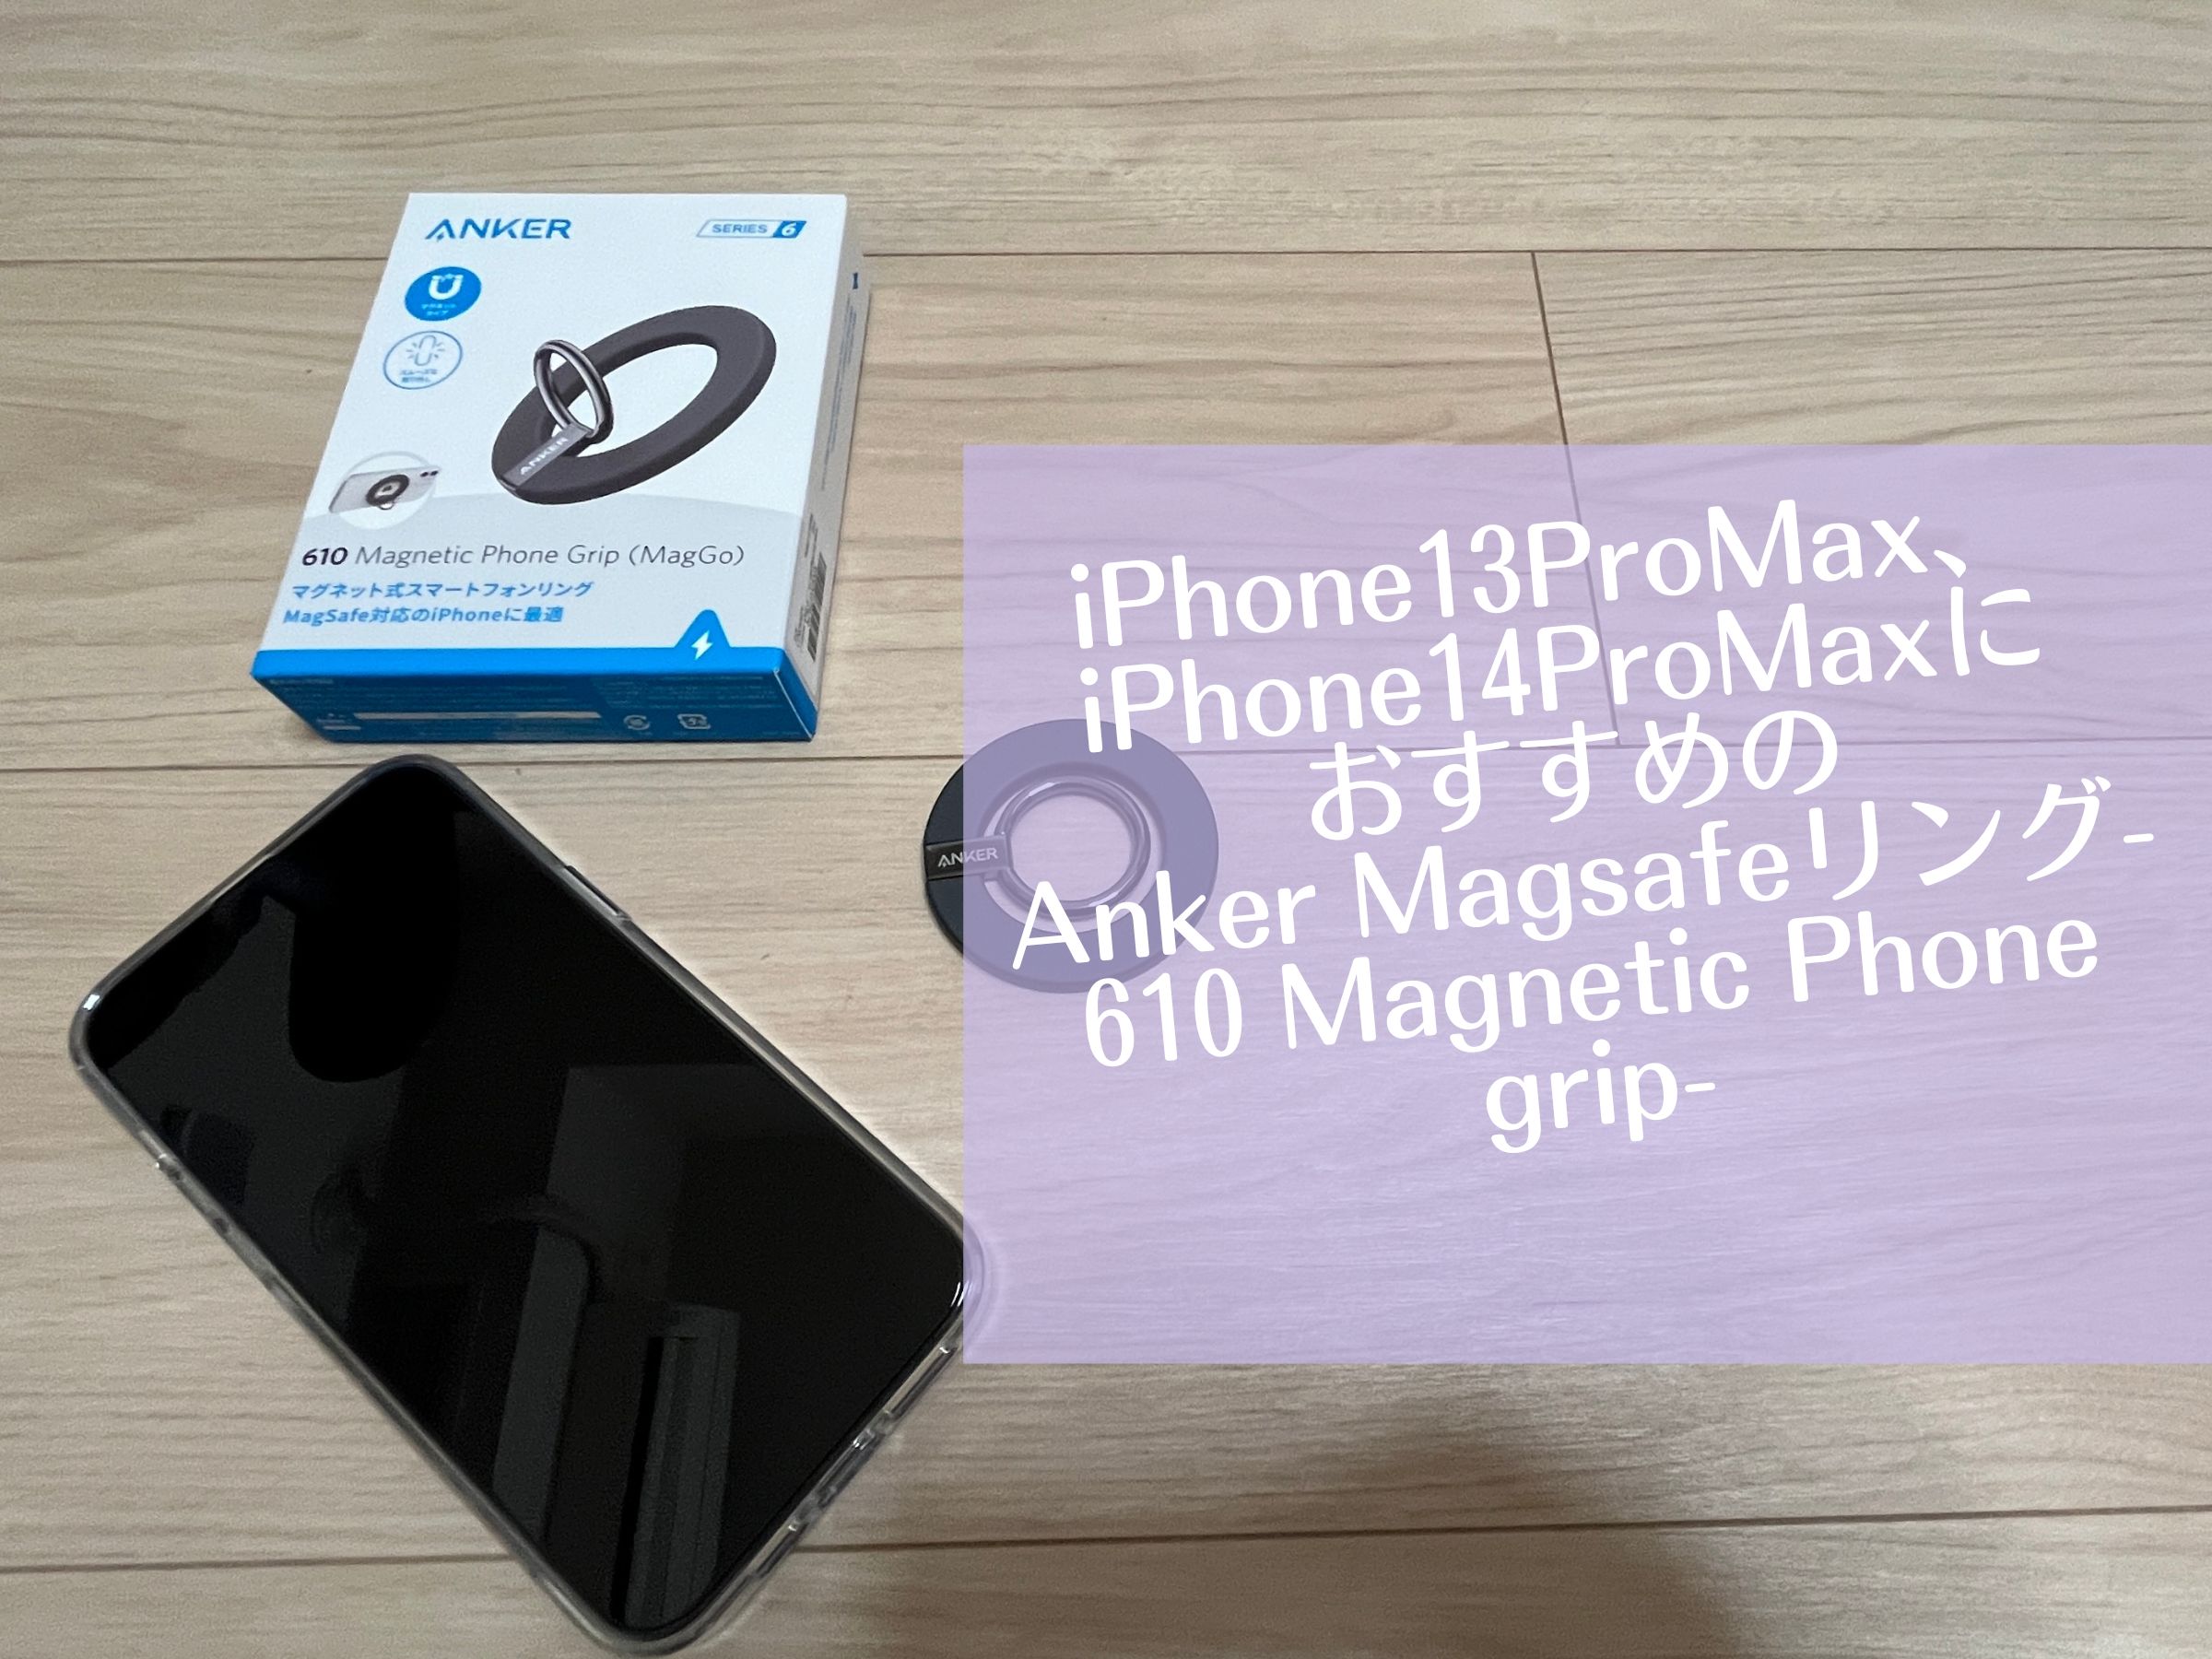 楽天ランキング1位】 Anker 610 Magnetic Phone Grip MagGo マグネット式スマホリング マグネット式 バンカーリング  スマホス